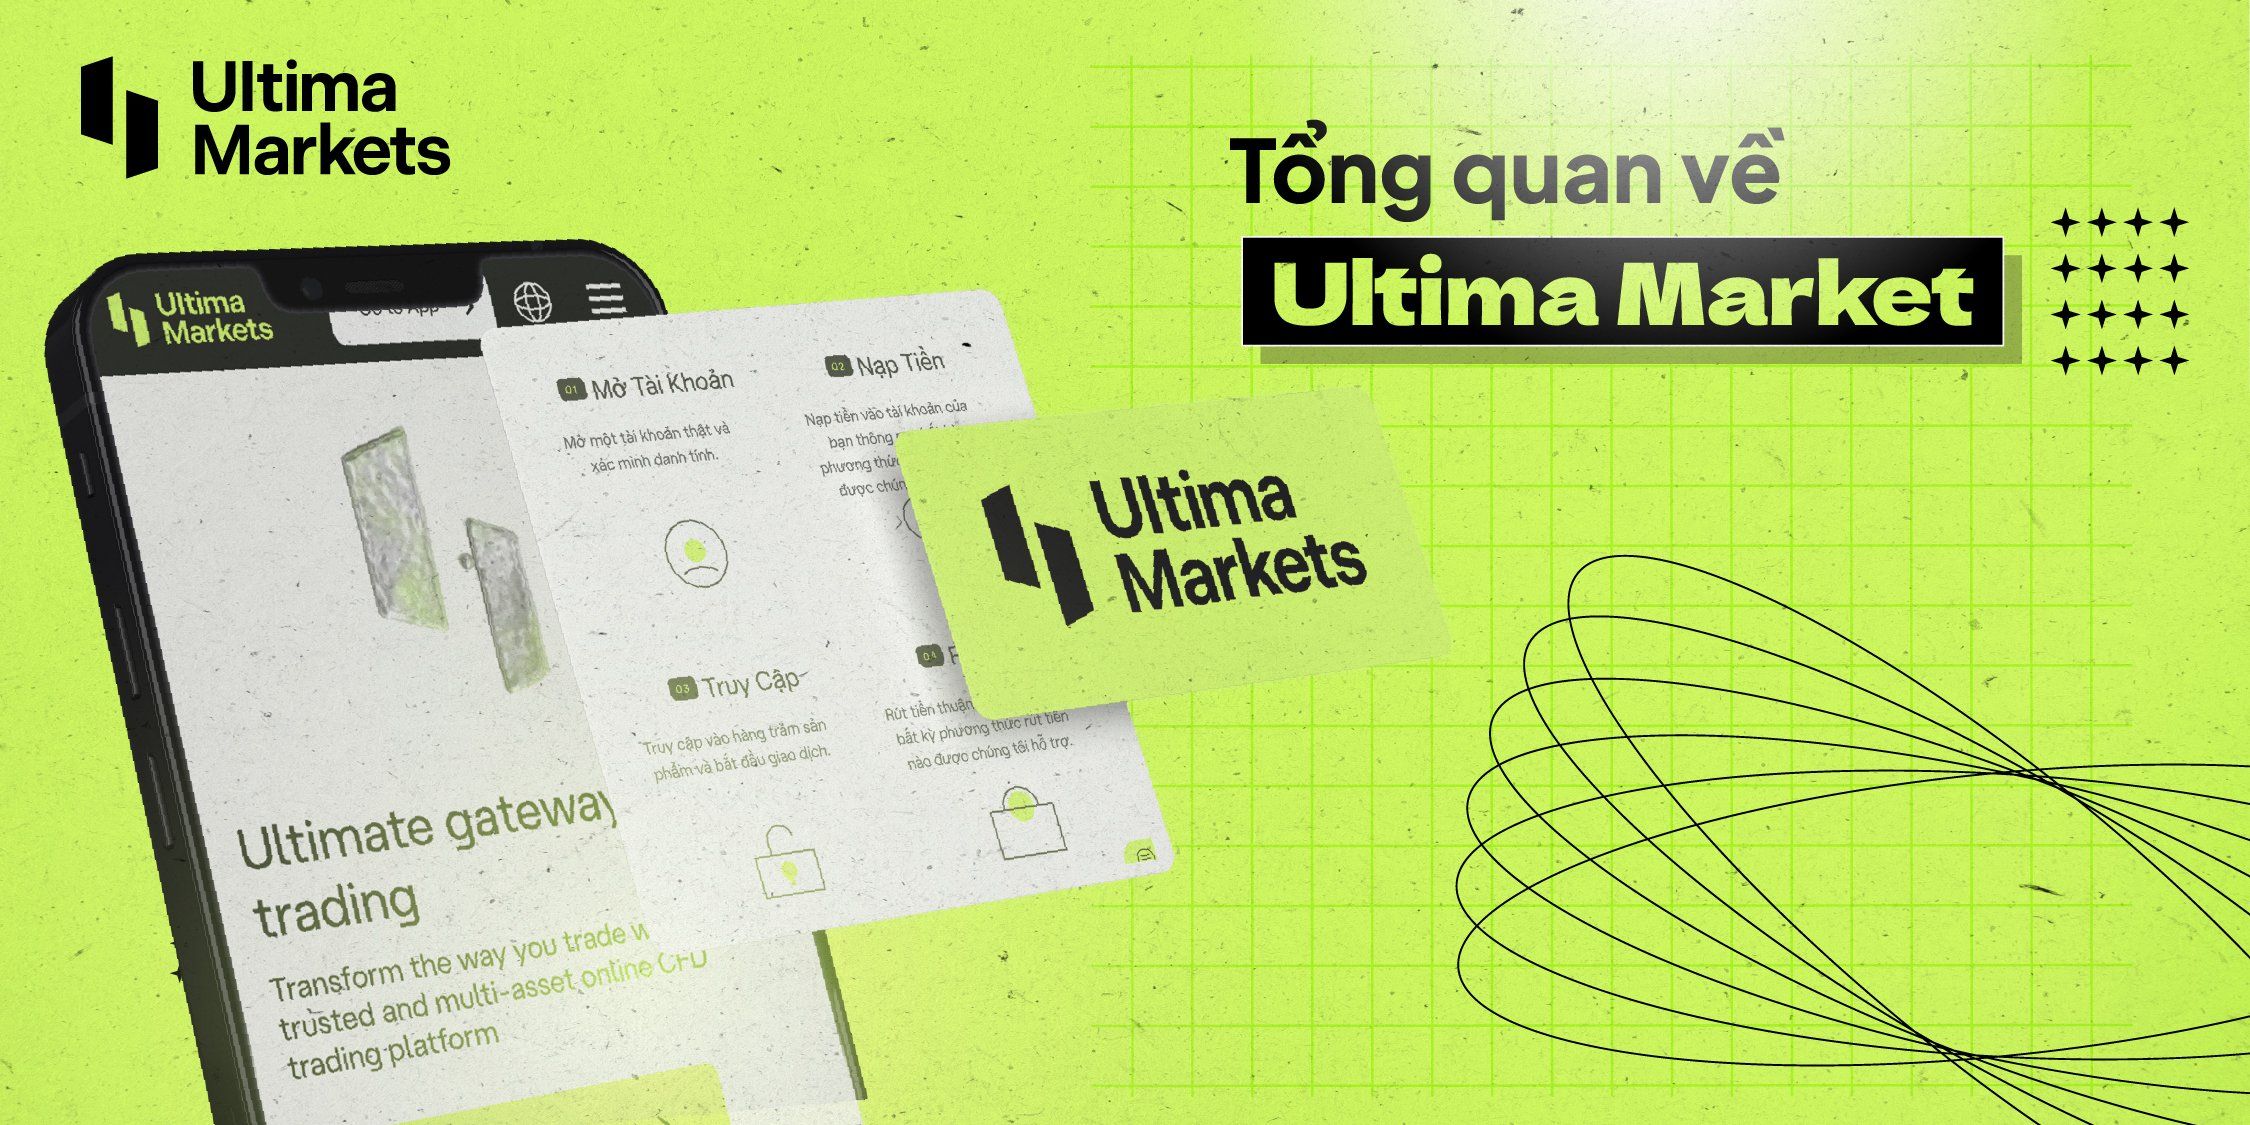 ultima-markets-04.jpg